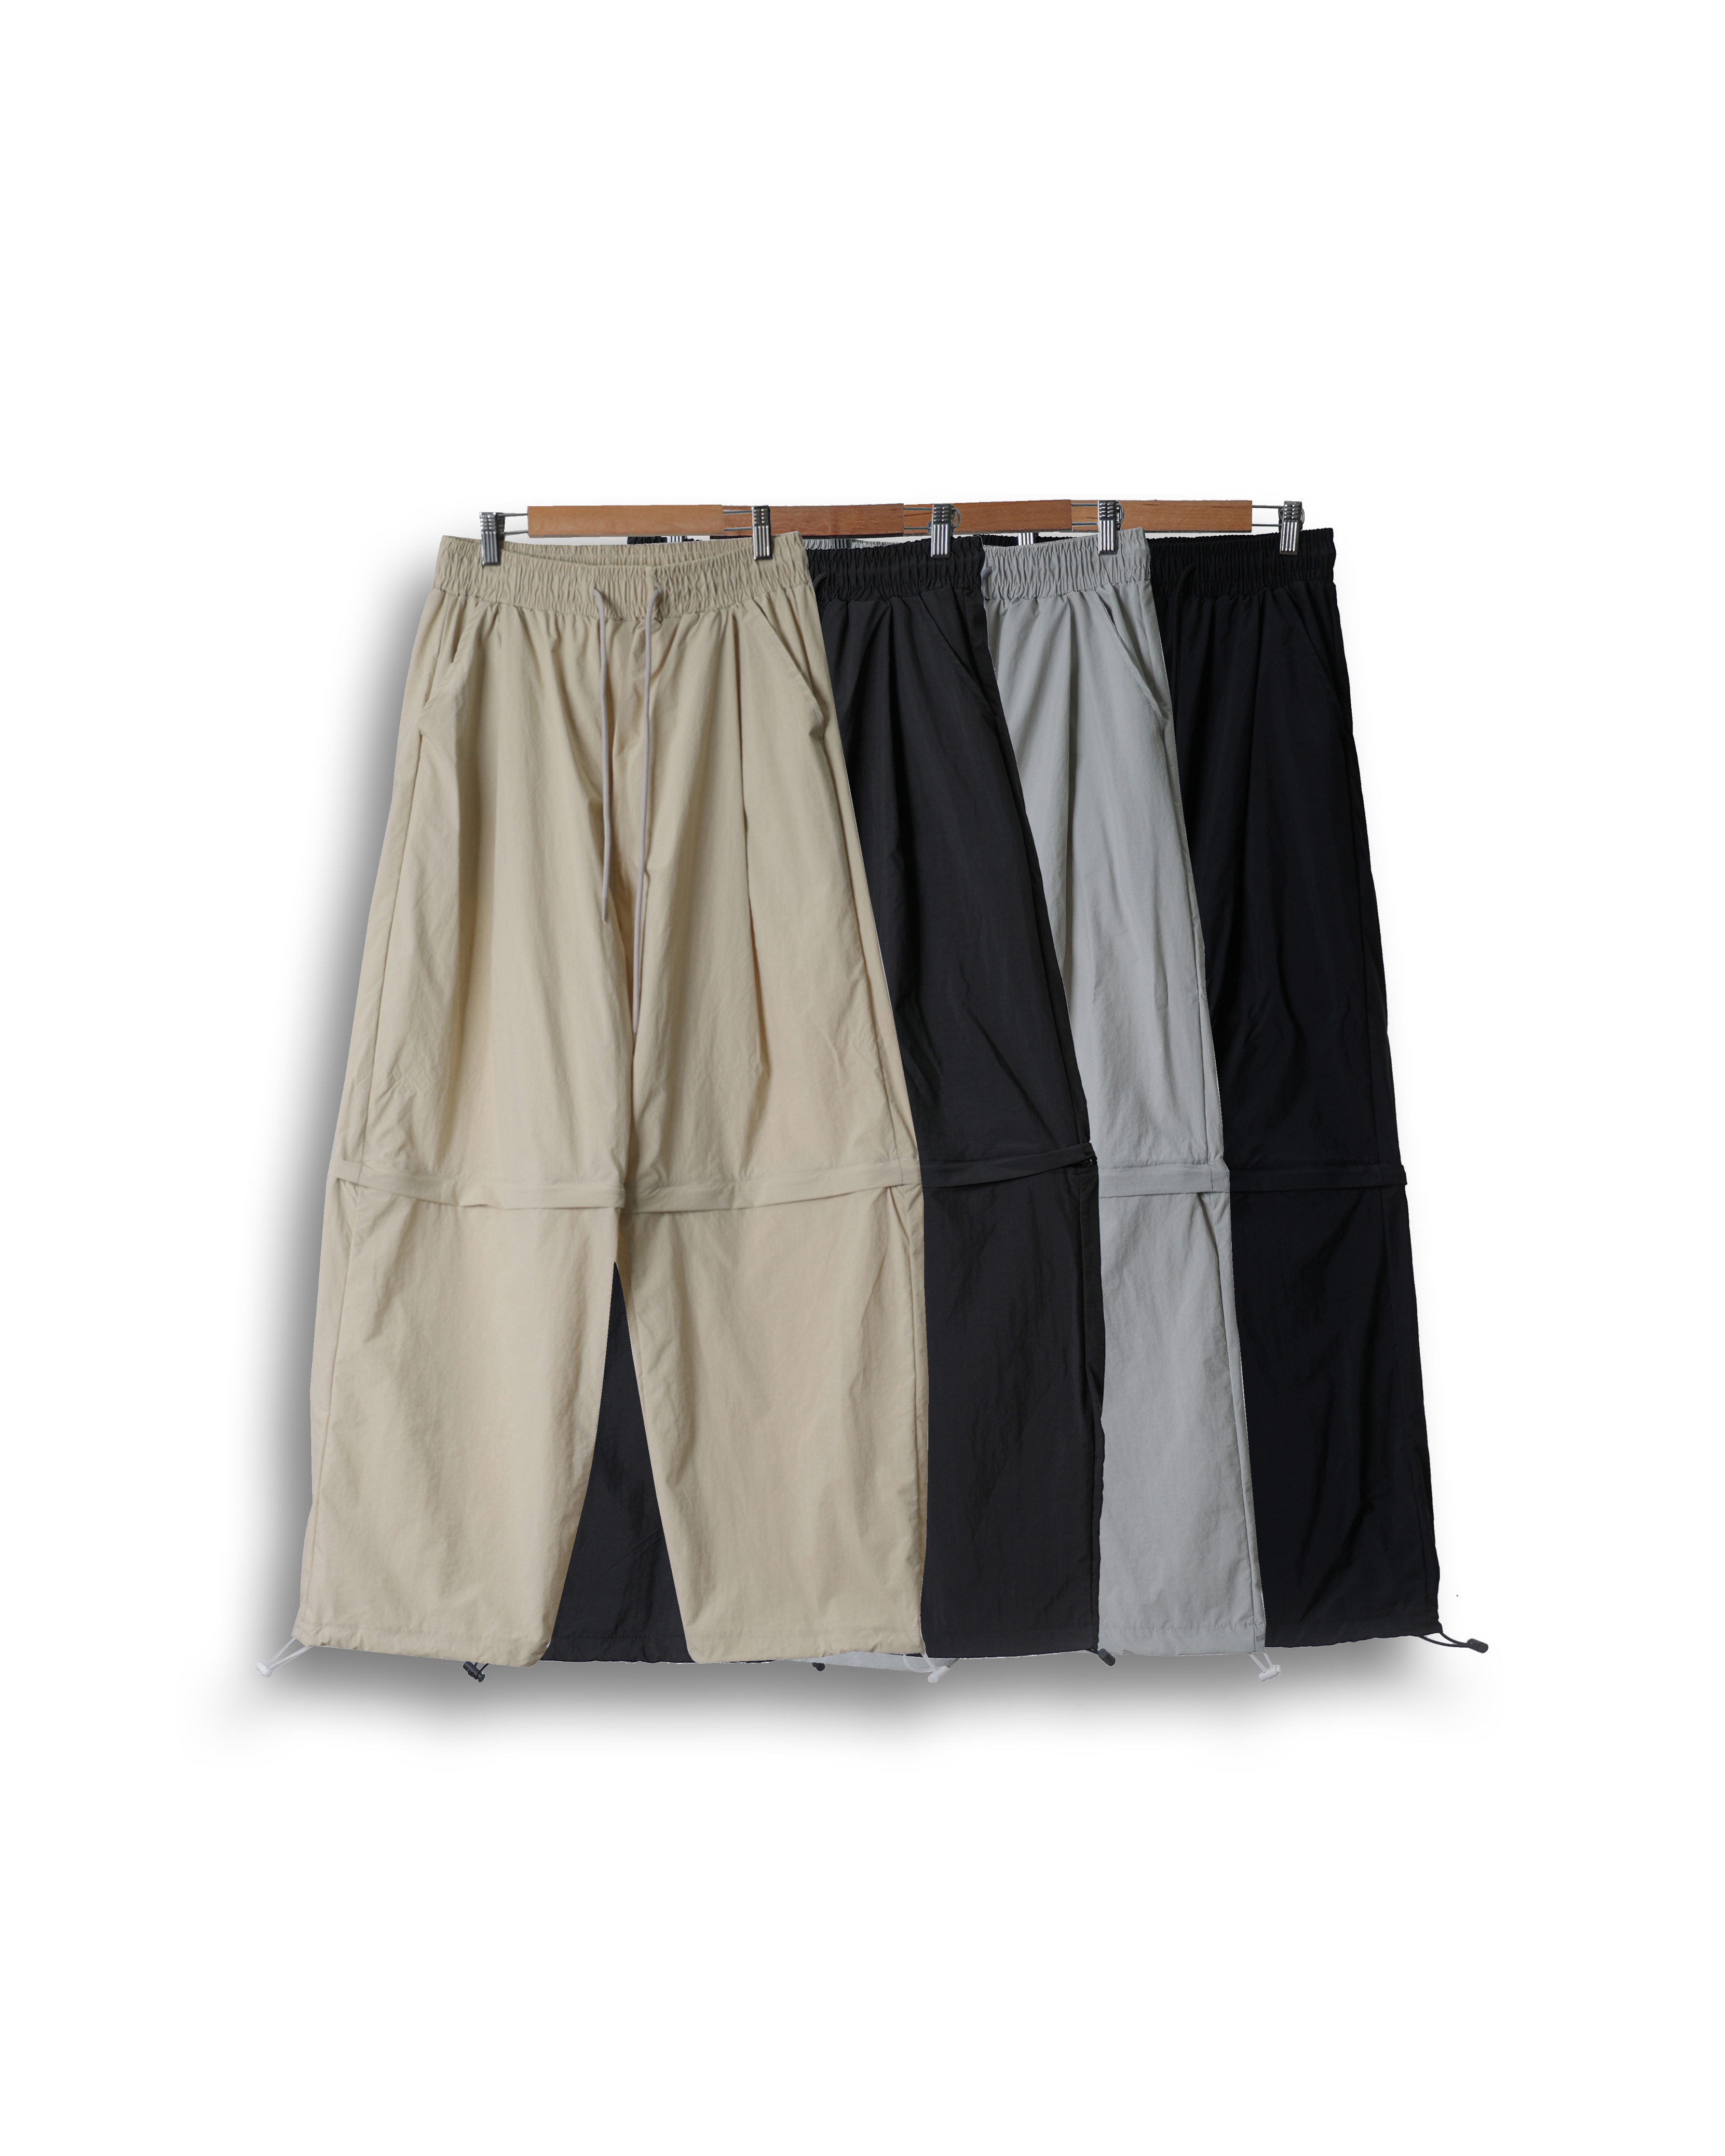 LUS Hook Zip Nylon Spoty Wide Pants (Black/Charcoal/Light Gray/Beige)